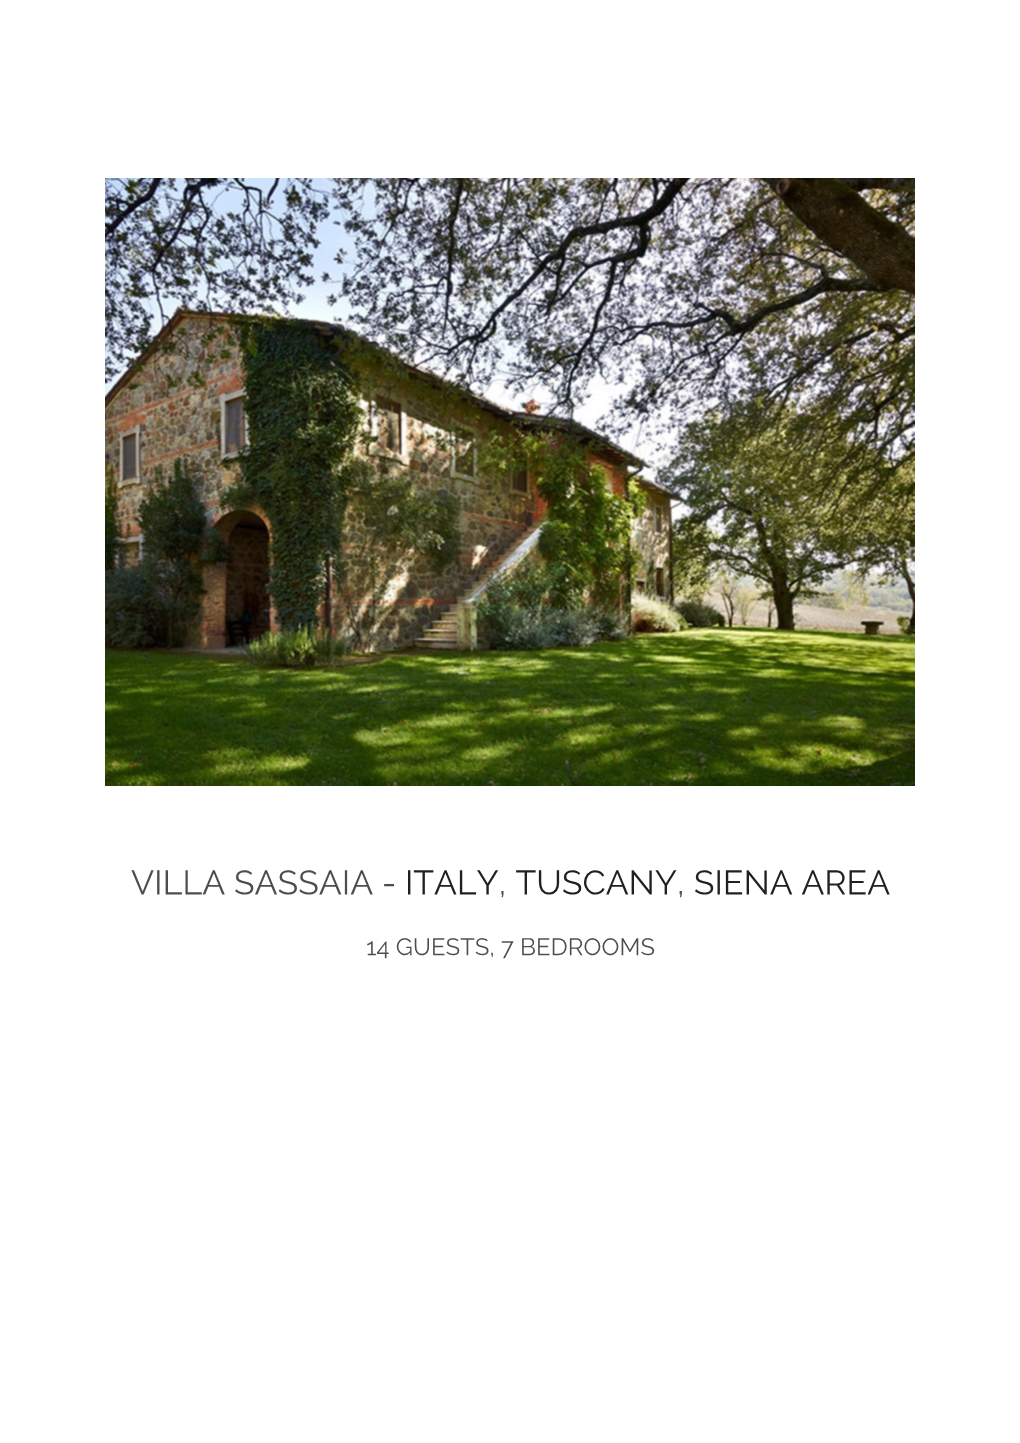 Villa Sassaia - Italy, Tuscany, Siena Area